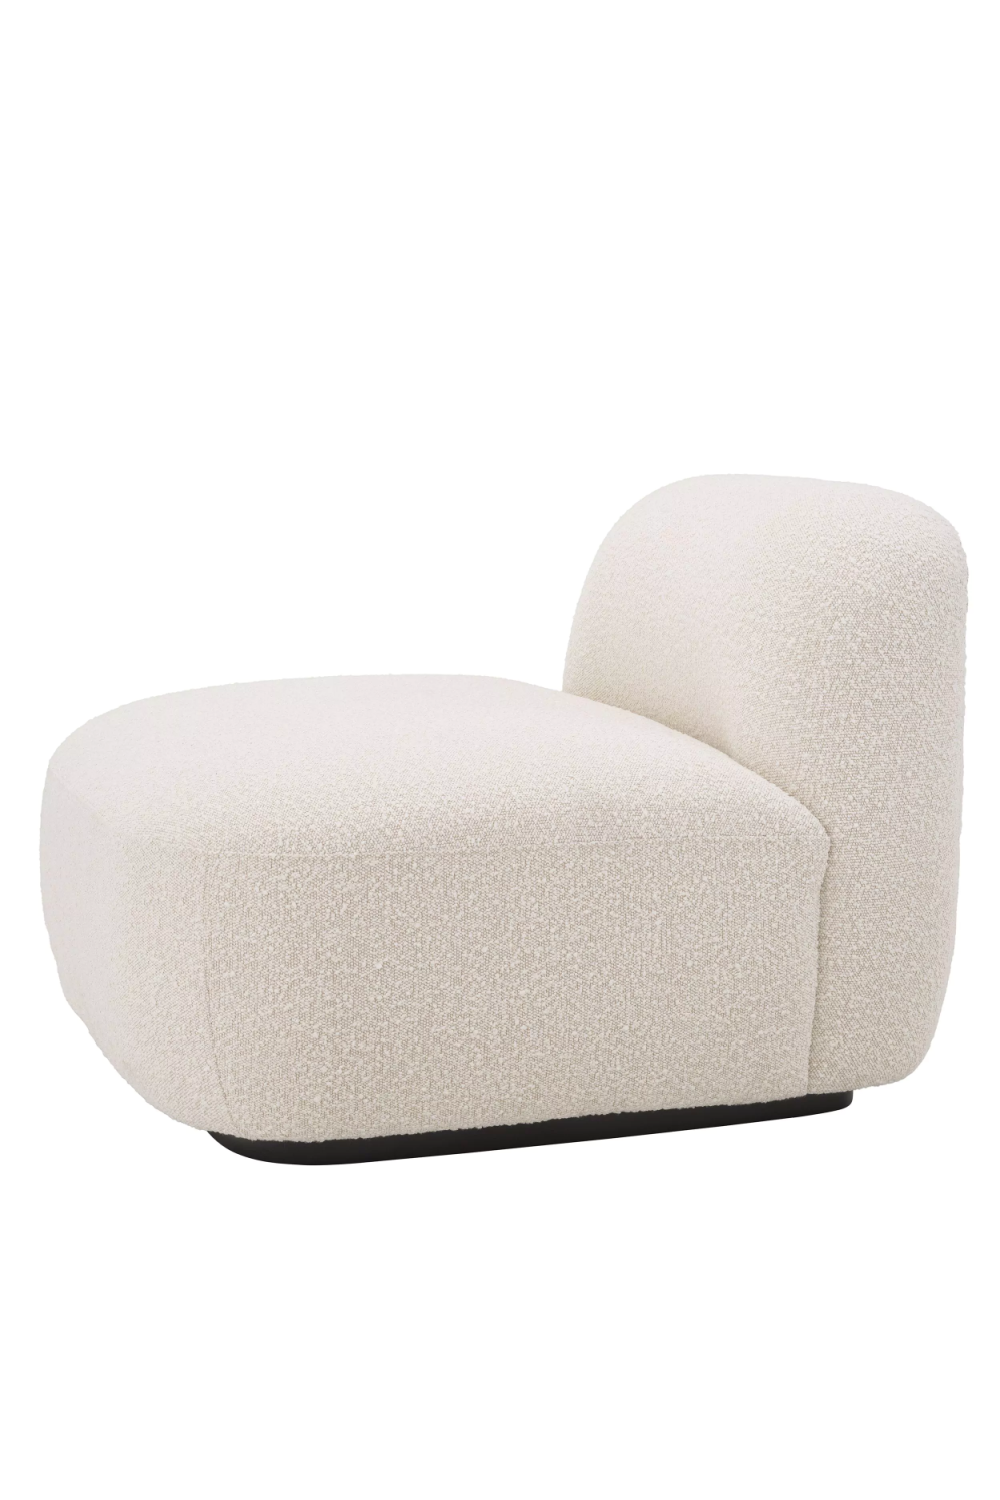 Cream Bouclé Slipper Chair | Eichholtz Björn | Oroa.com